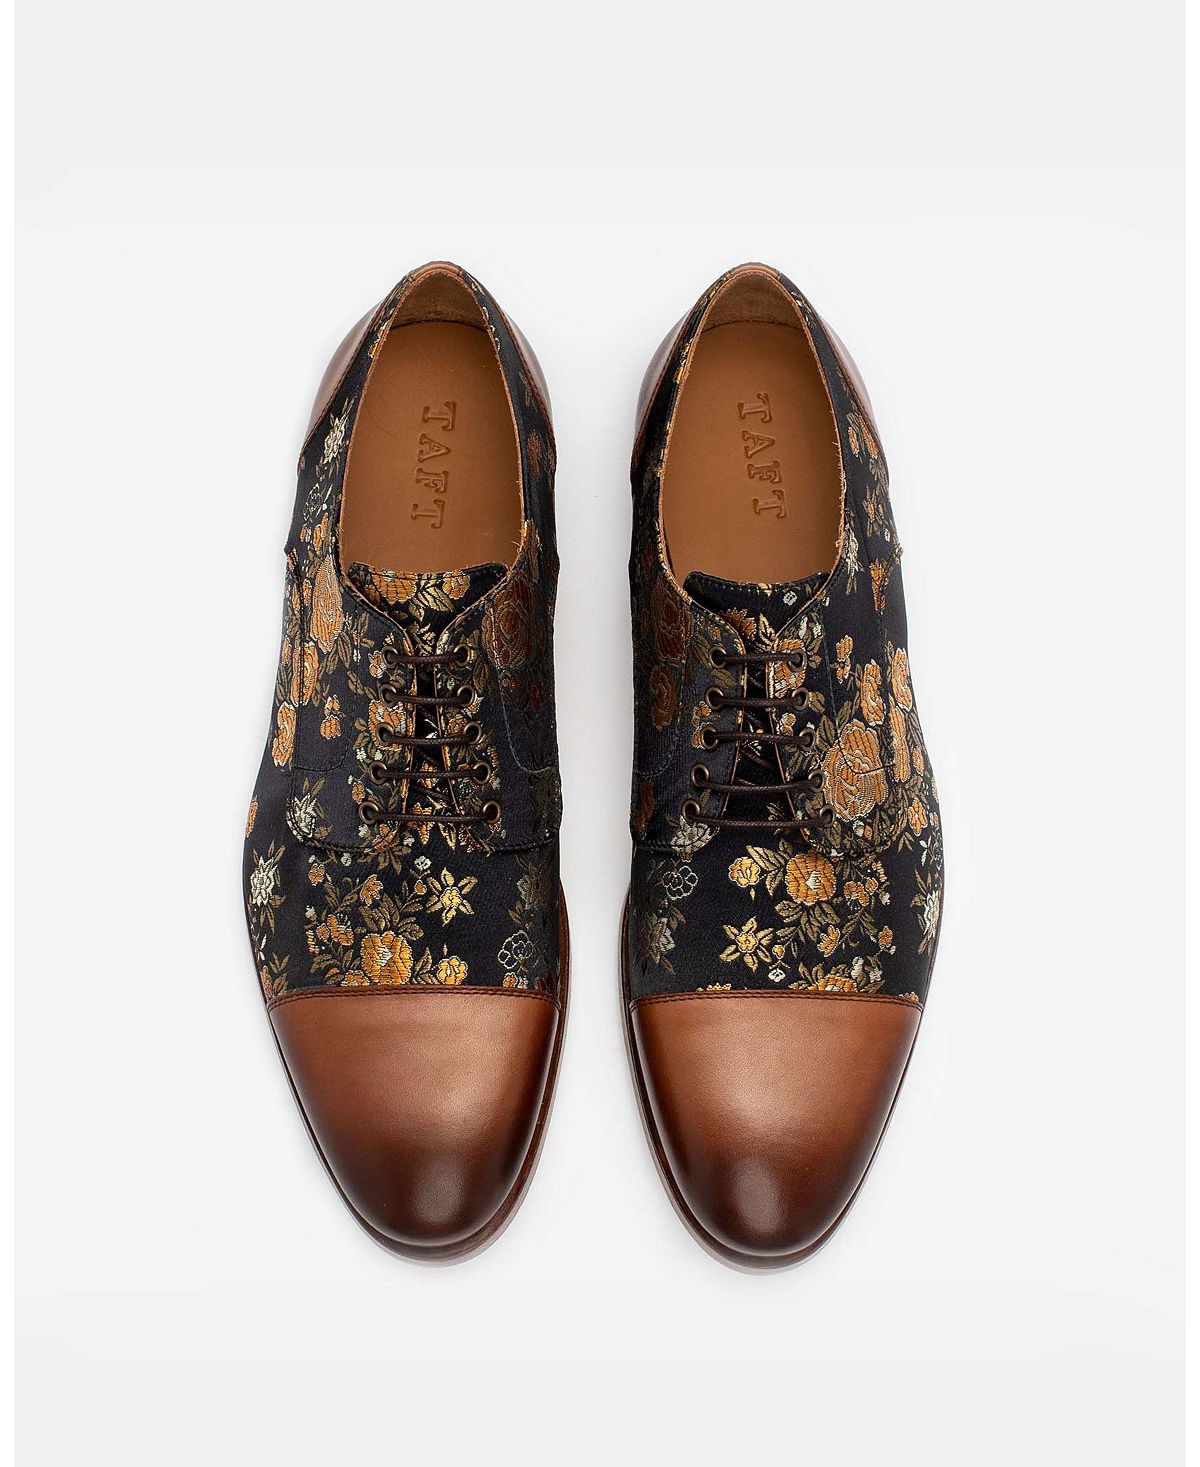 цена Мужские модельные туфли Jack ручной работы из кожи, бархата и шерсти Taft